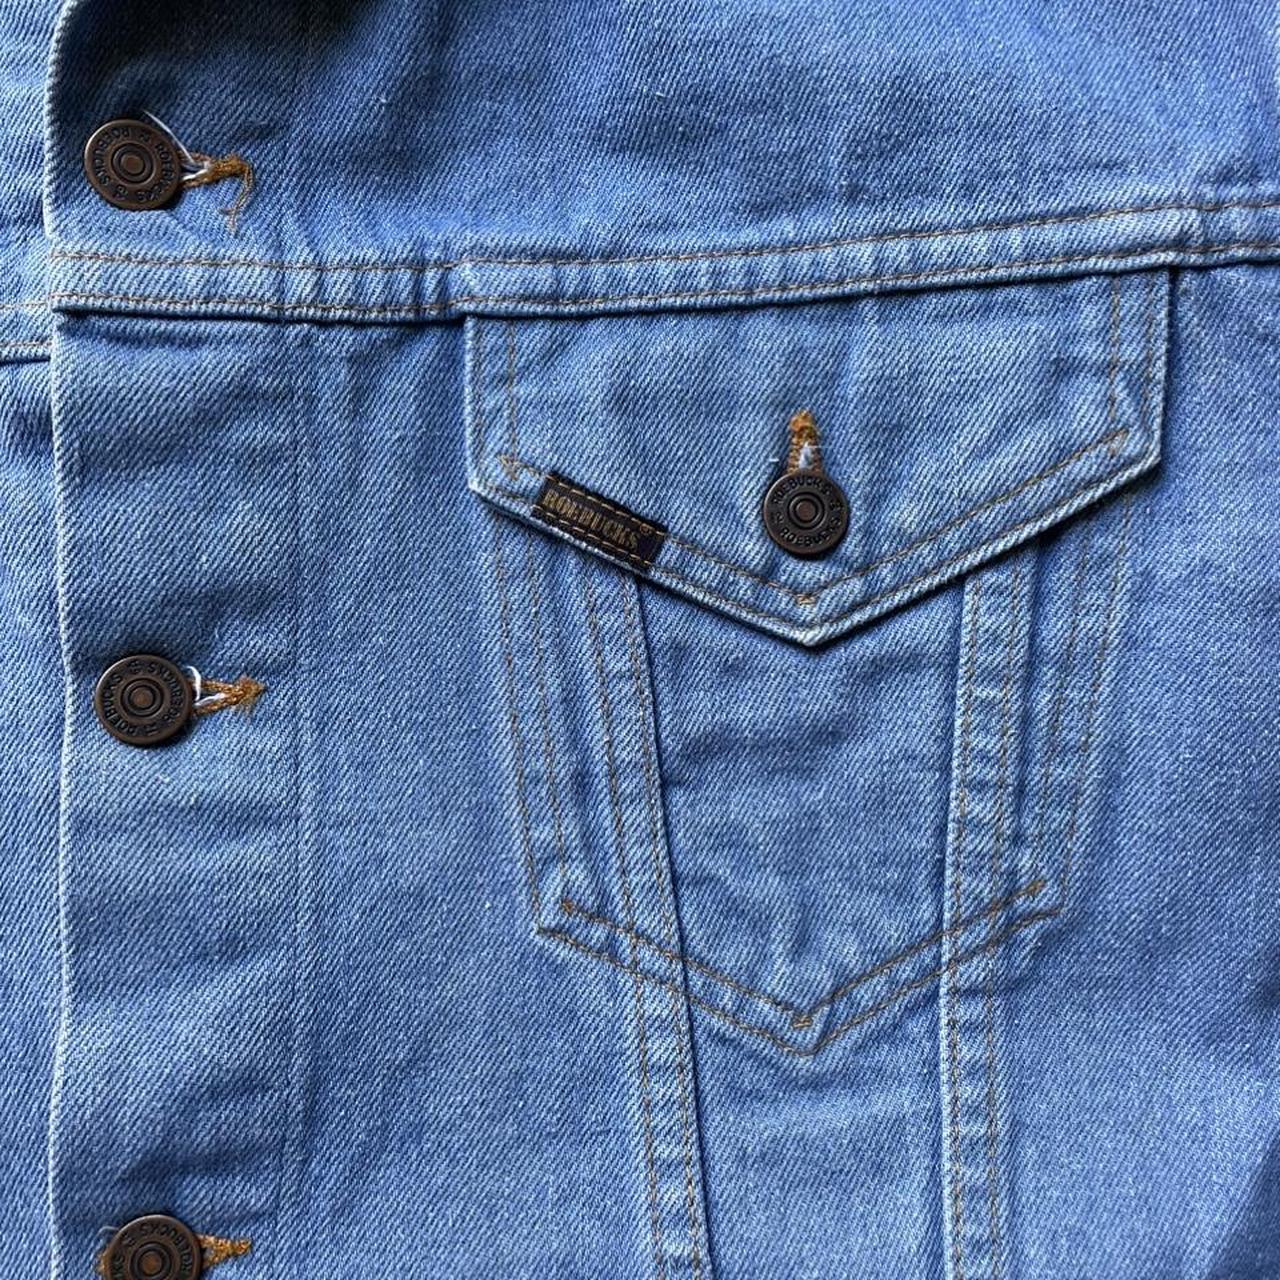 Sears Men's Blue Jacket (4)